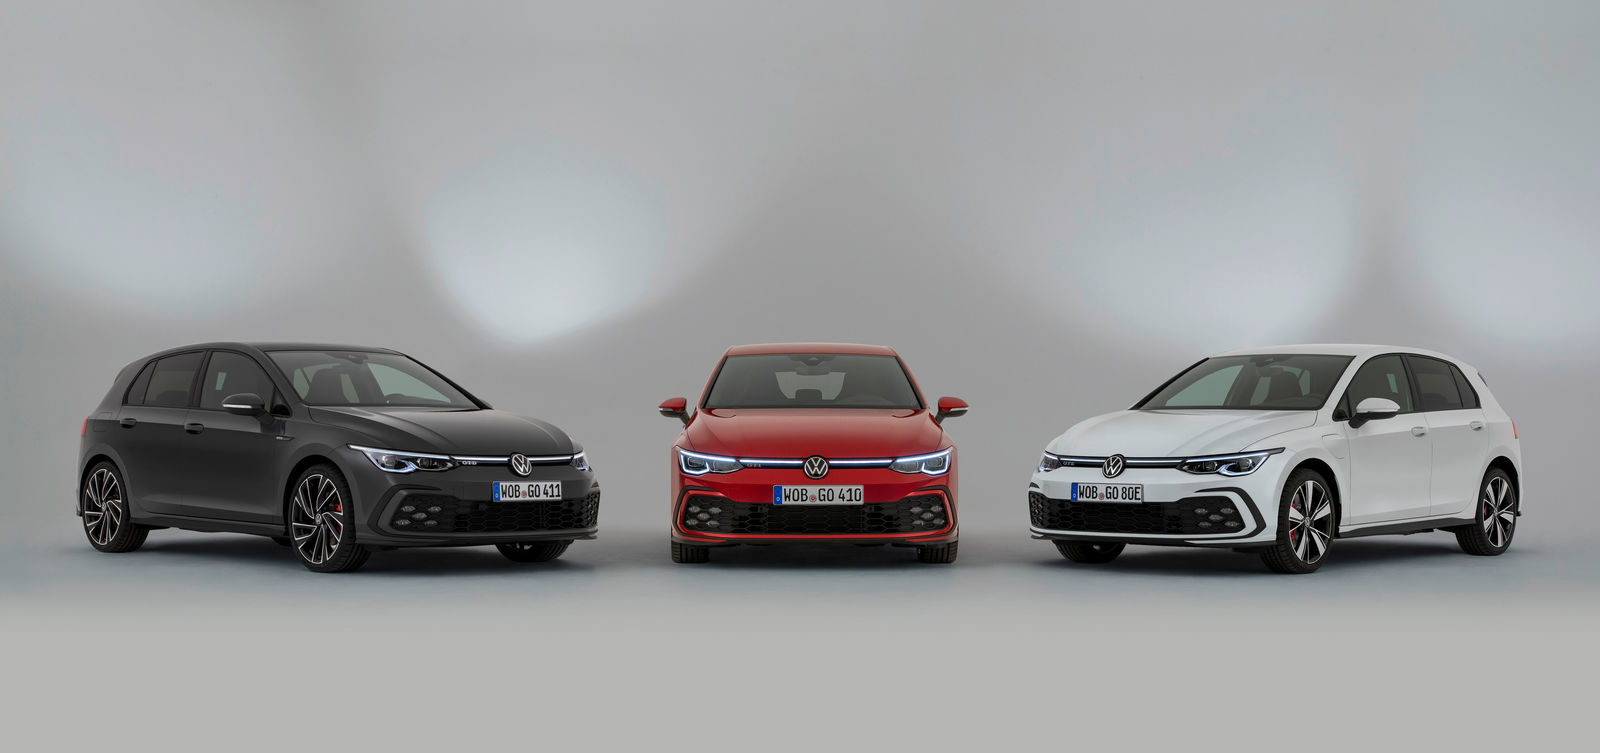 Volkswagen Golf GTD, GTI and GTE